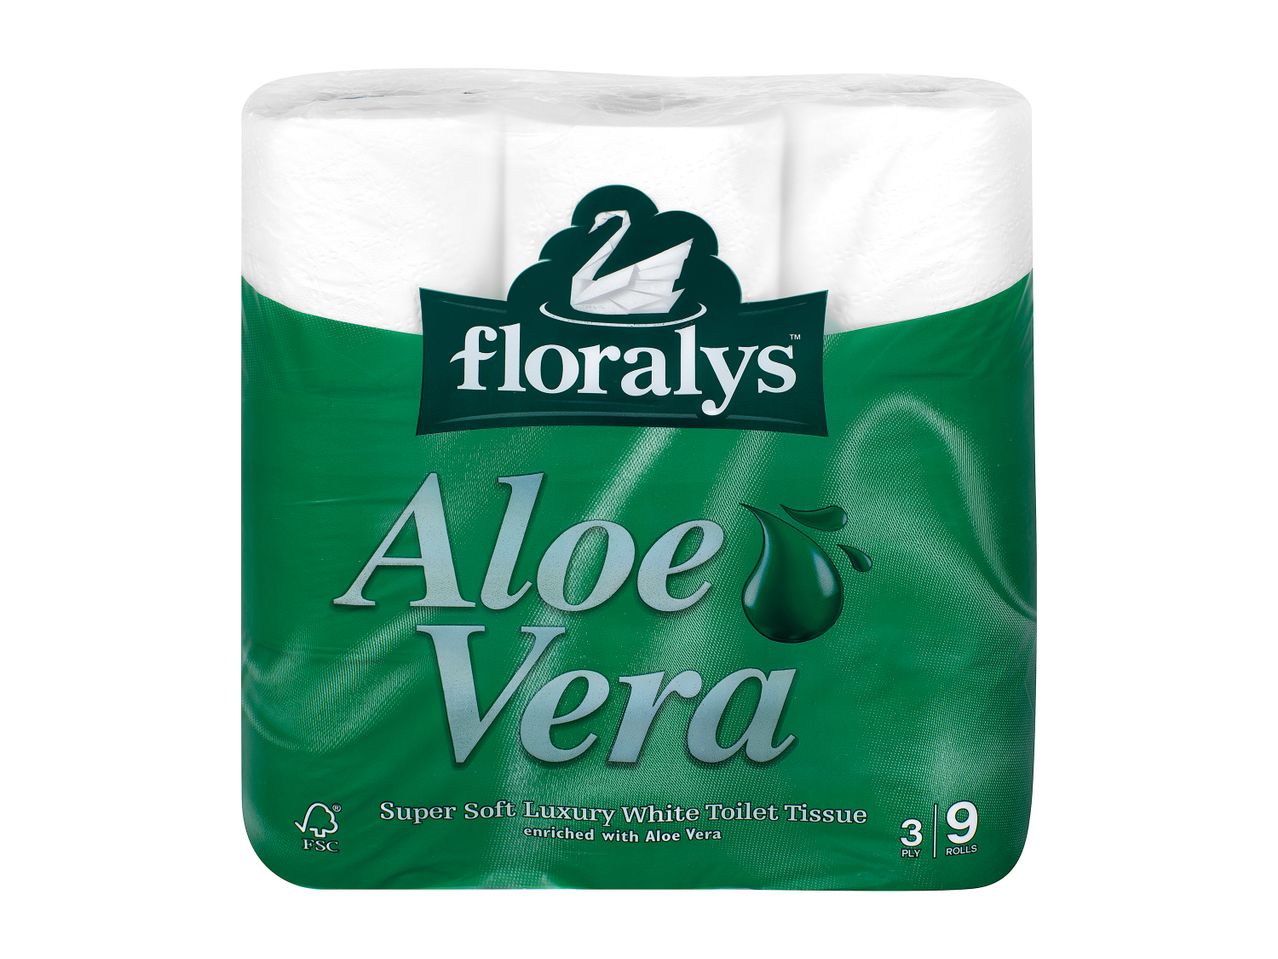 Go to full screen view: Floralys Aloe Vera Toilet Tissue - Image 1